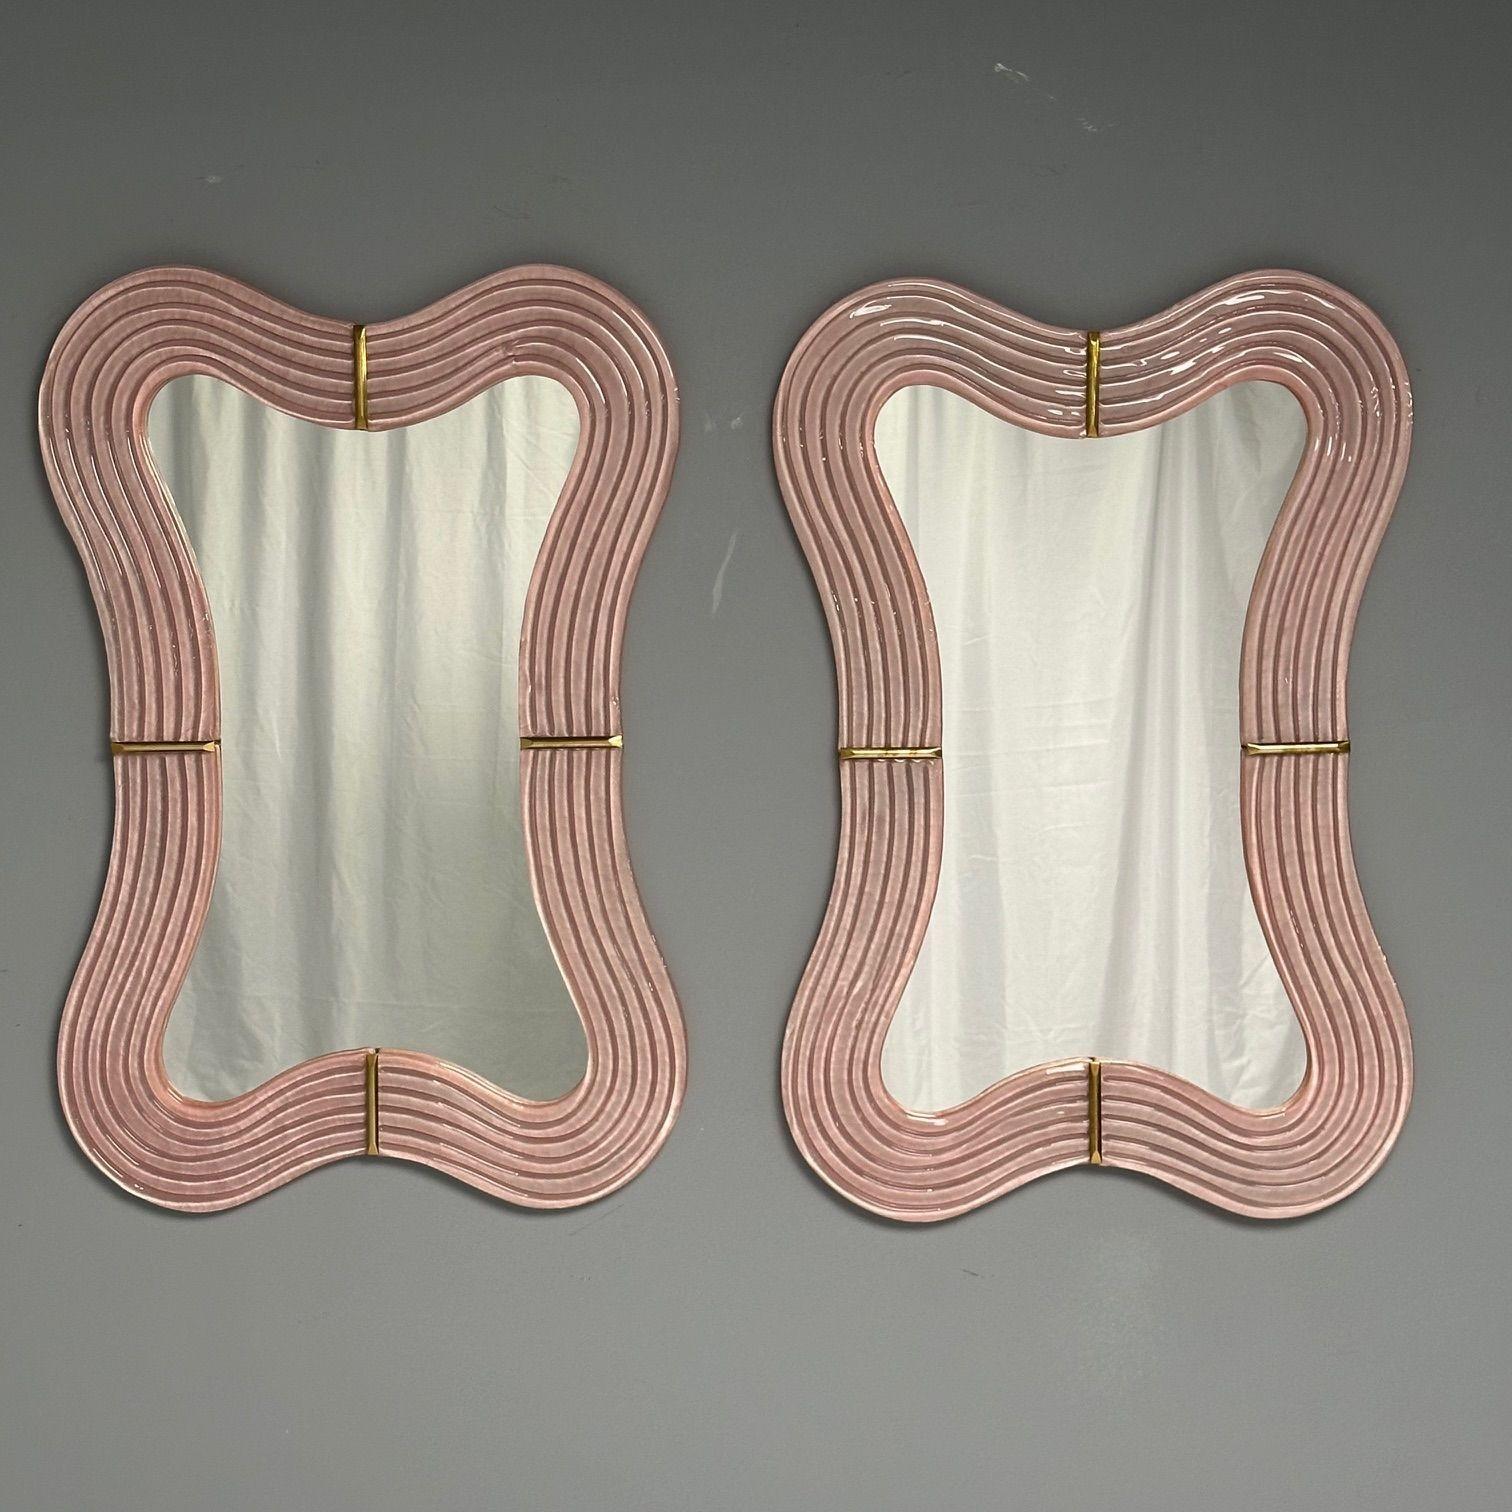 Miroirs muraux contemporains, ondulés, en verre de Murano rose, laiton, Italie, 2023.

Paire de miroirs muraux rectangulaires conçus et fabriqués à la main dans un petit atelier de Venise, en Italie. Chaque miroir a un cadre ondulé en verre rose de